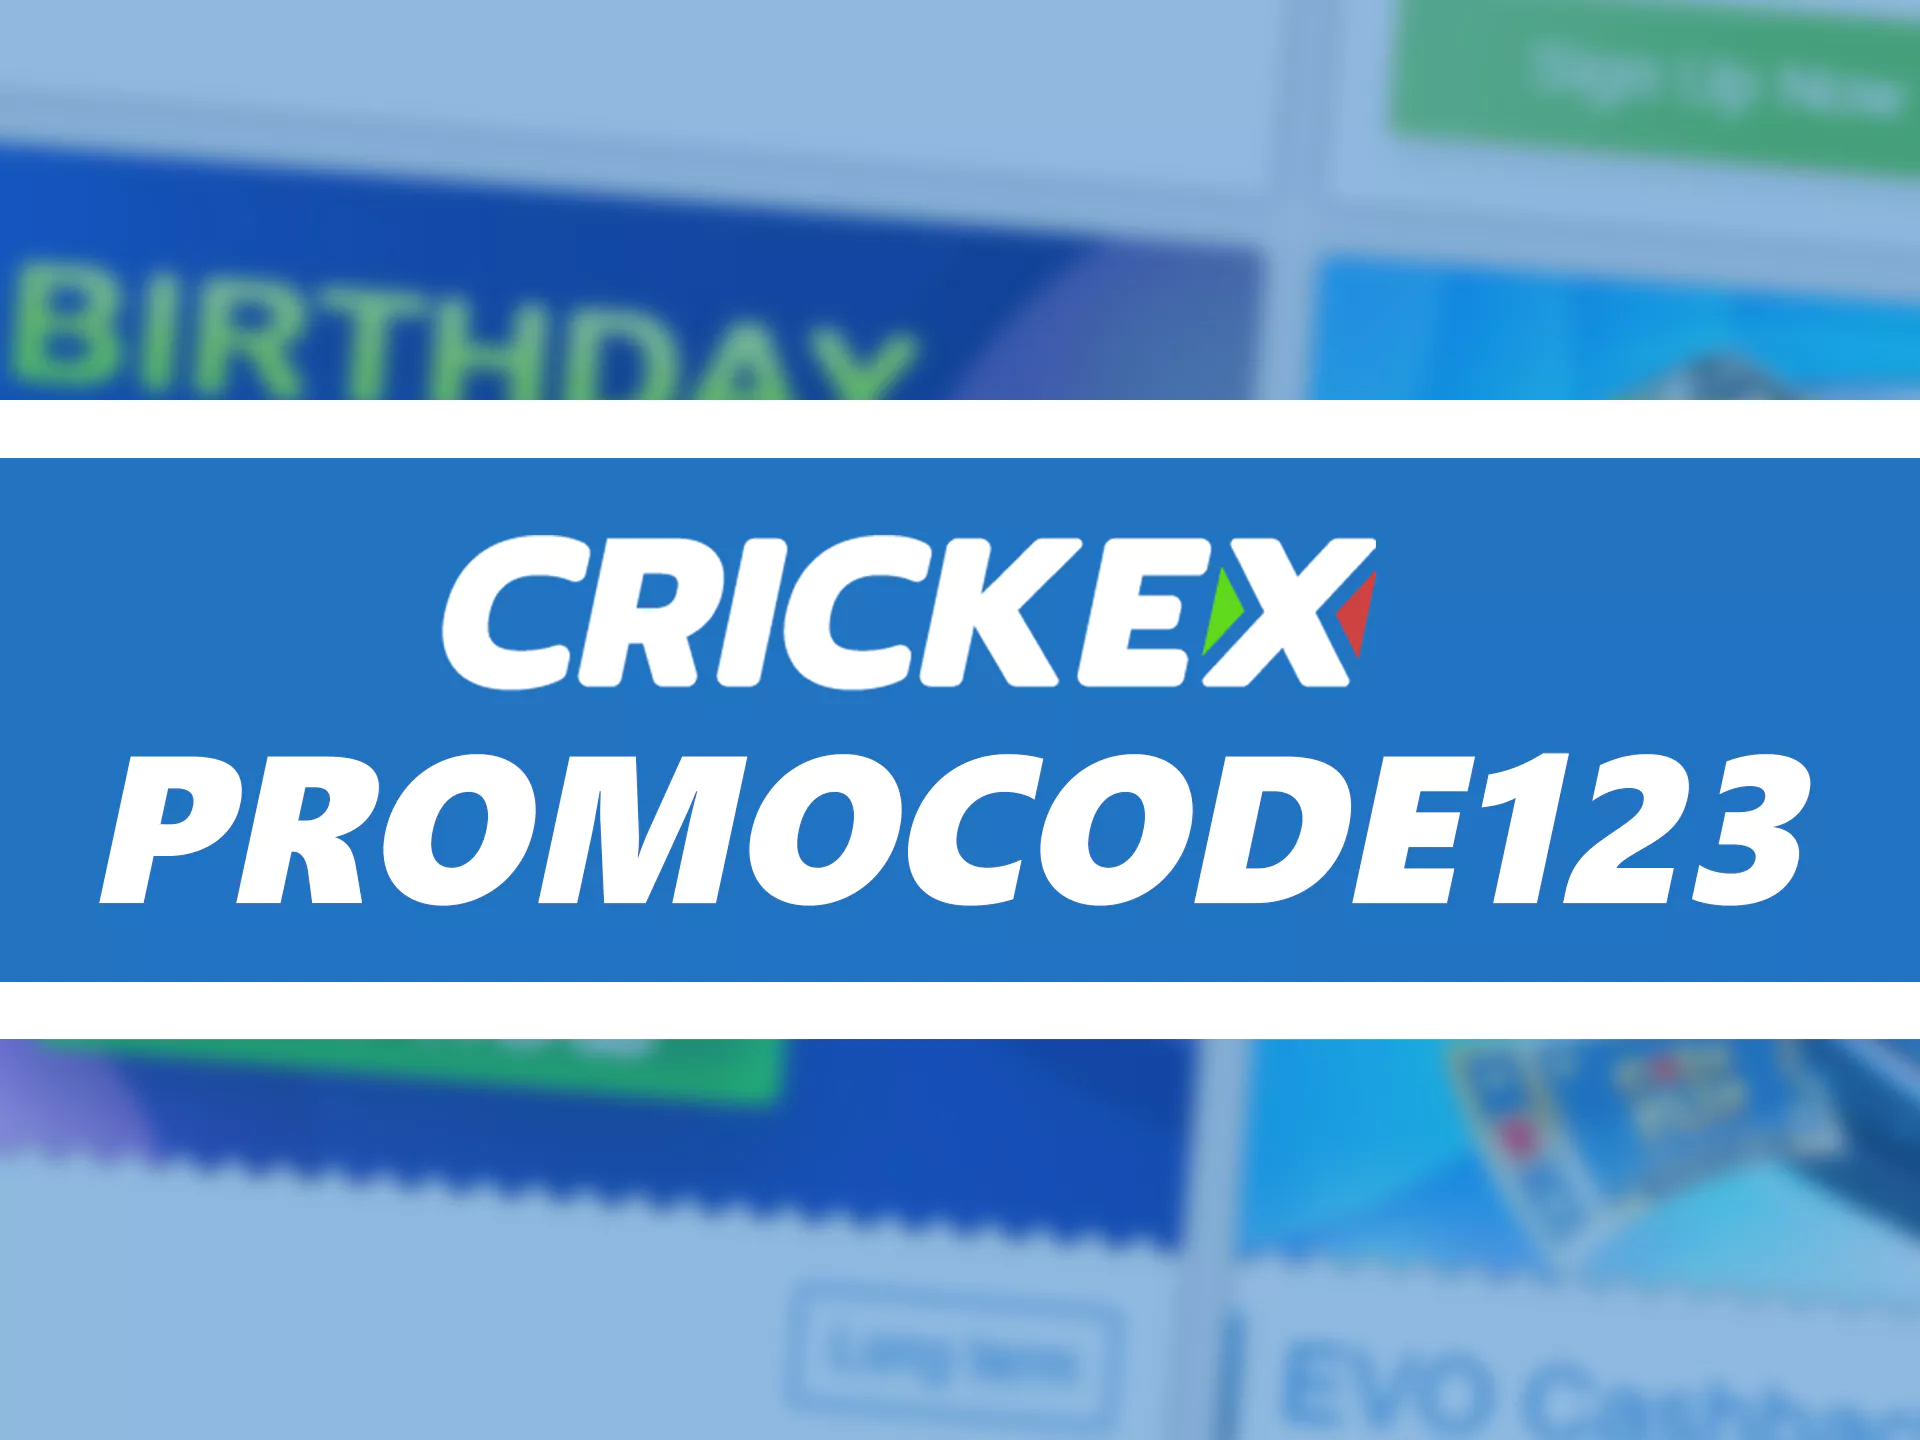 अपना खाता पंजीकृत करते समय प्रोमो कोड Crickex का उपयोग करें।